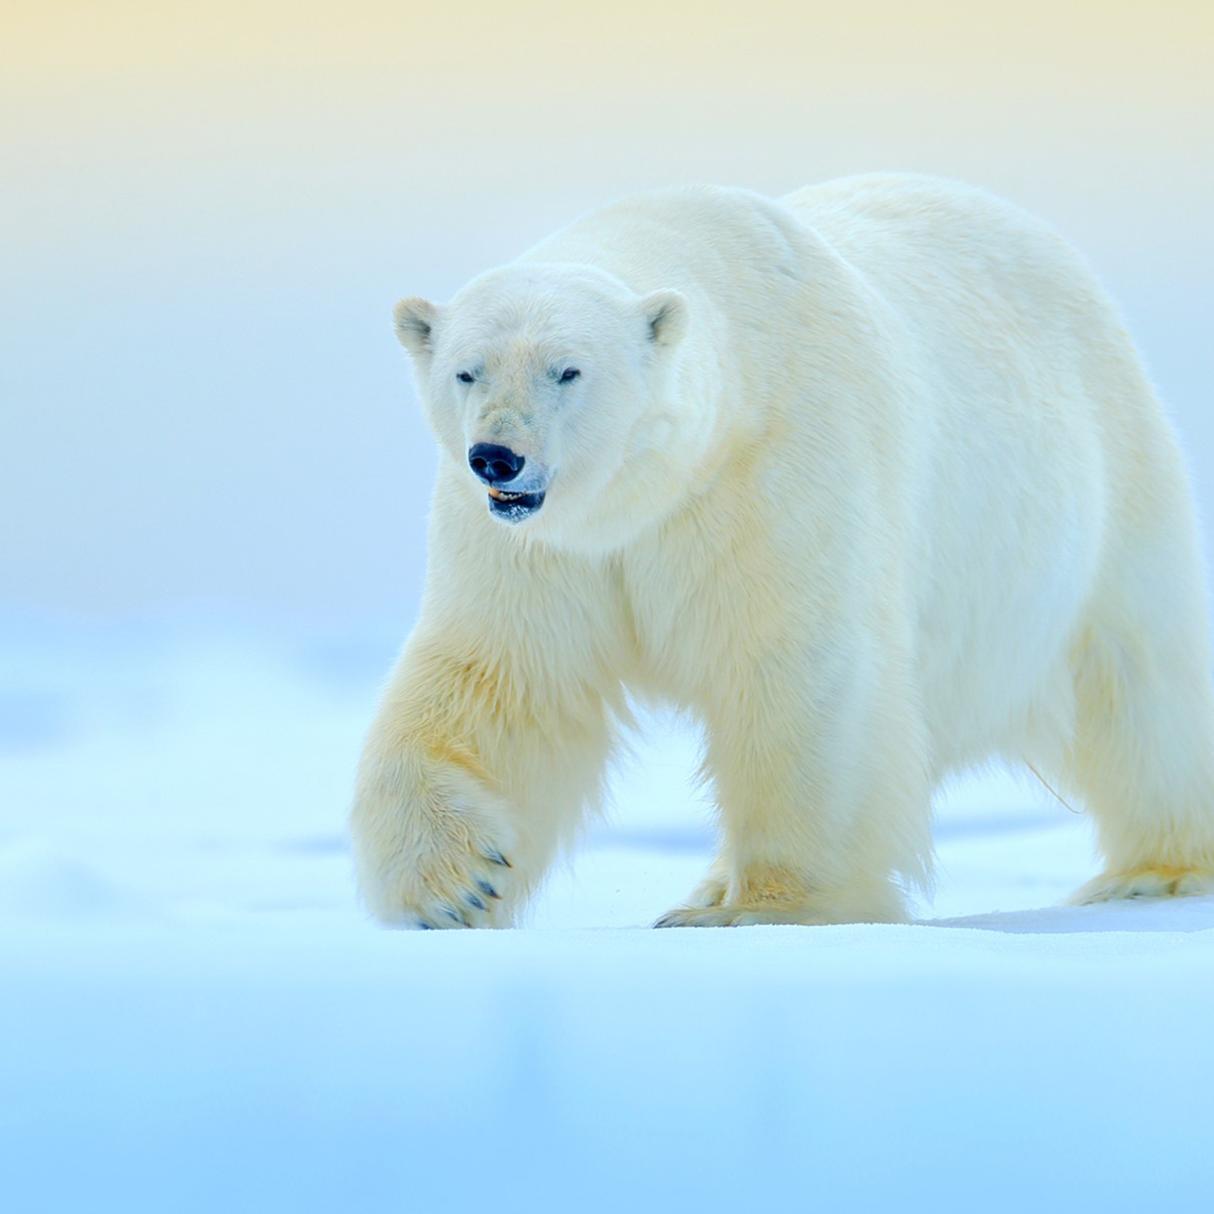 A white polar bear walks along a blue snow covered arctic tundra.